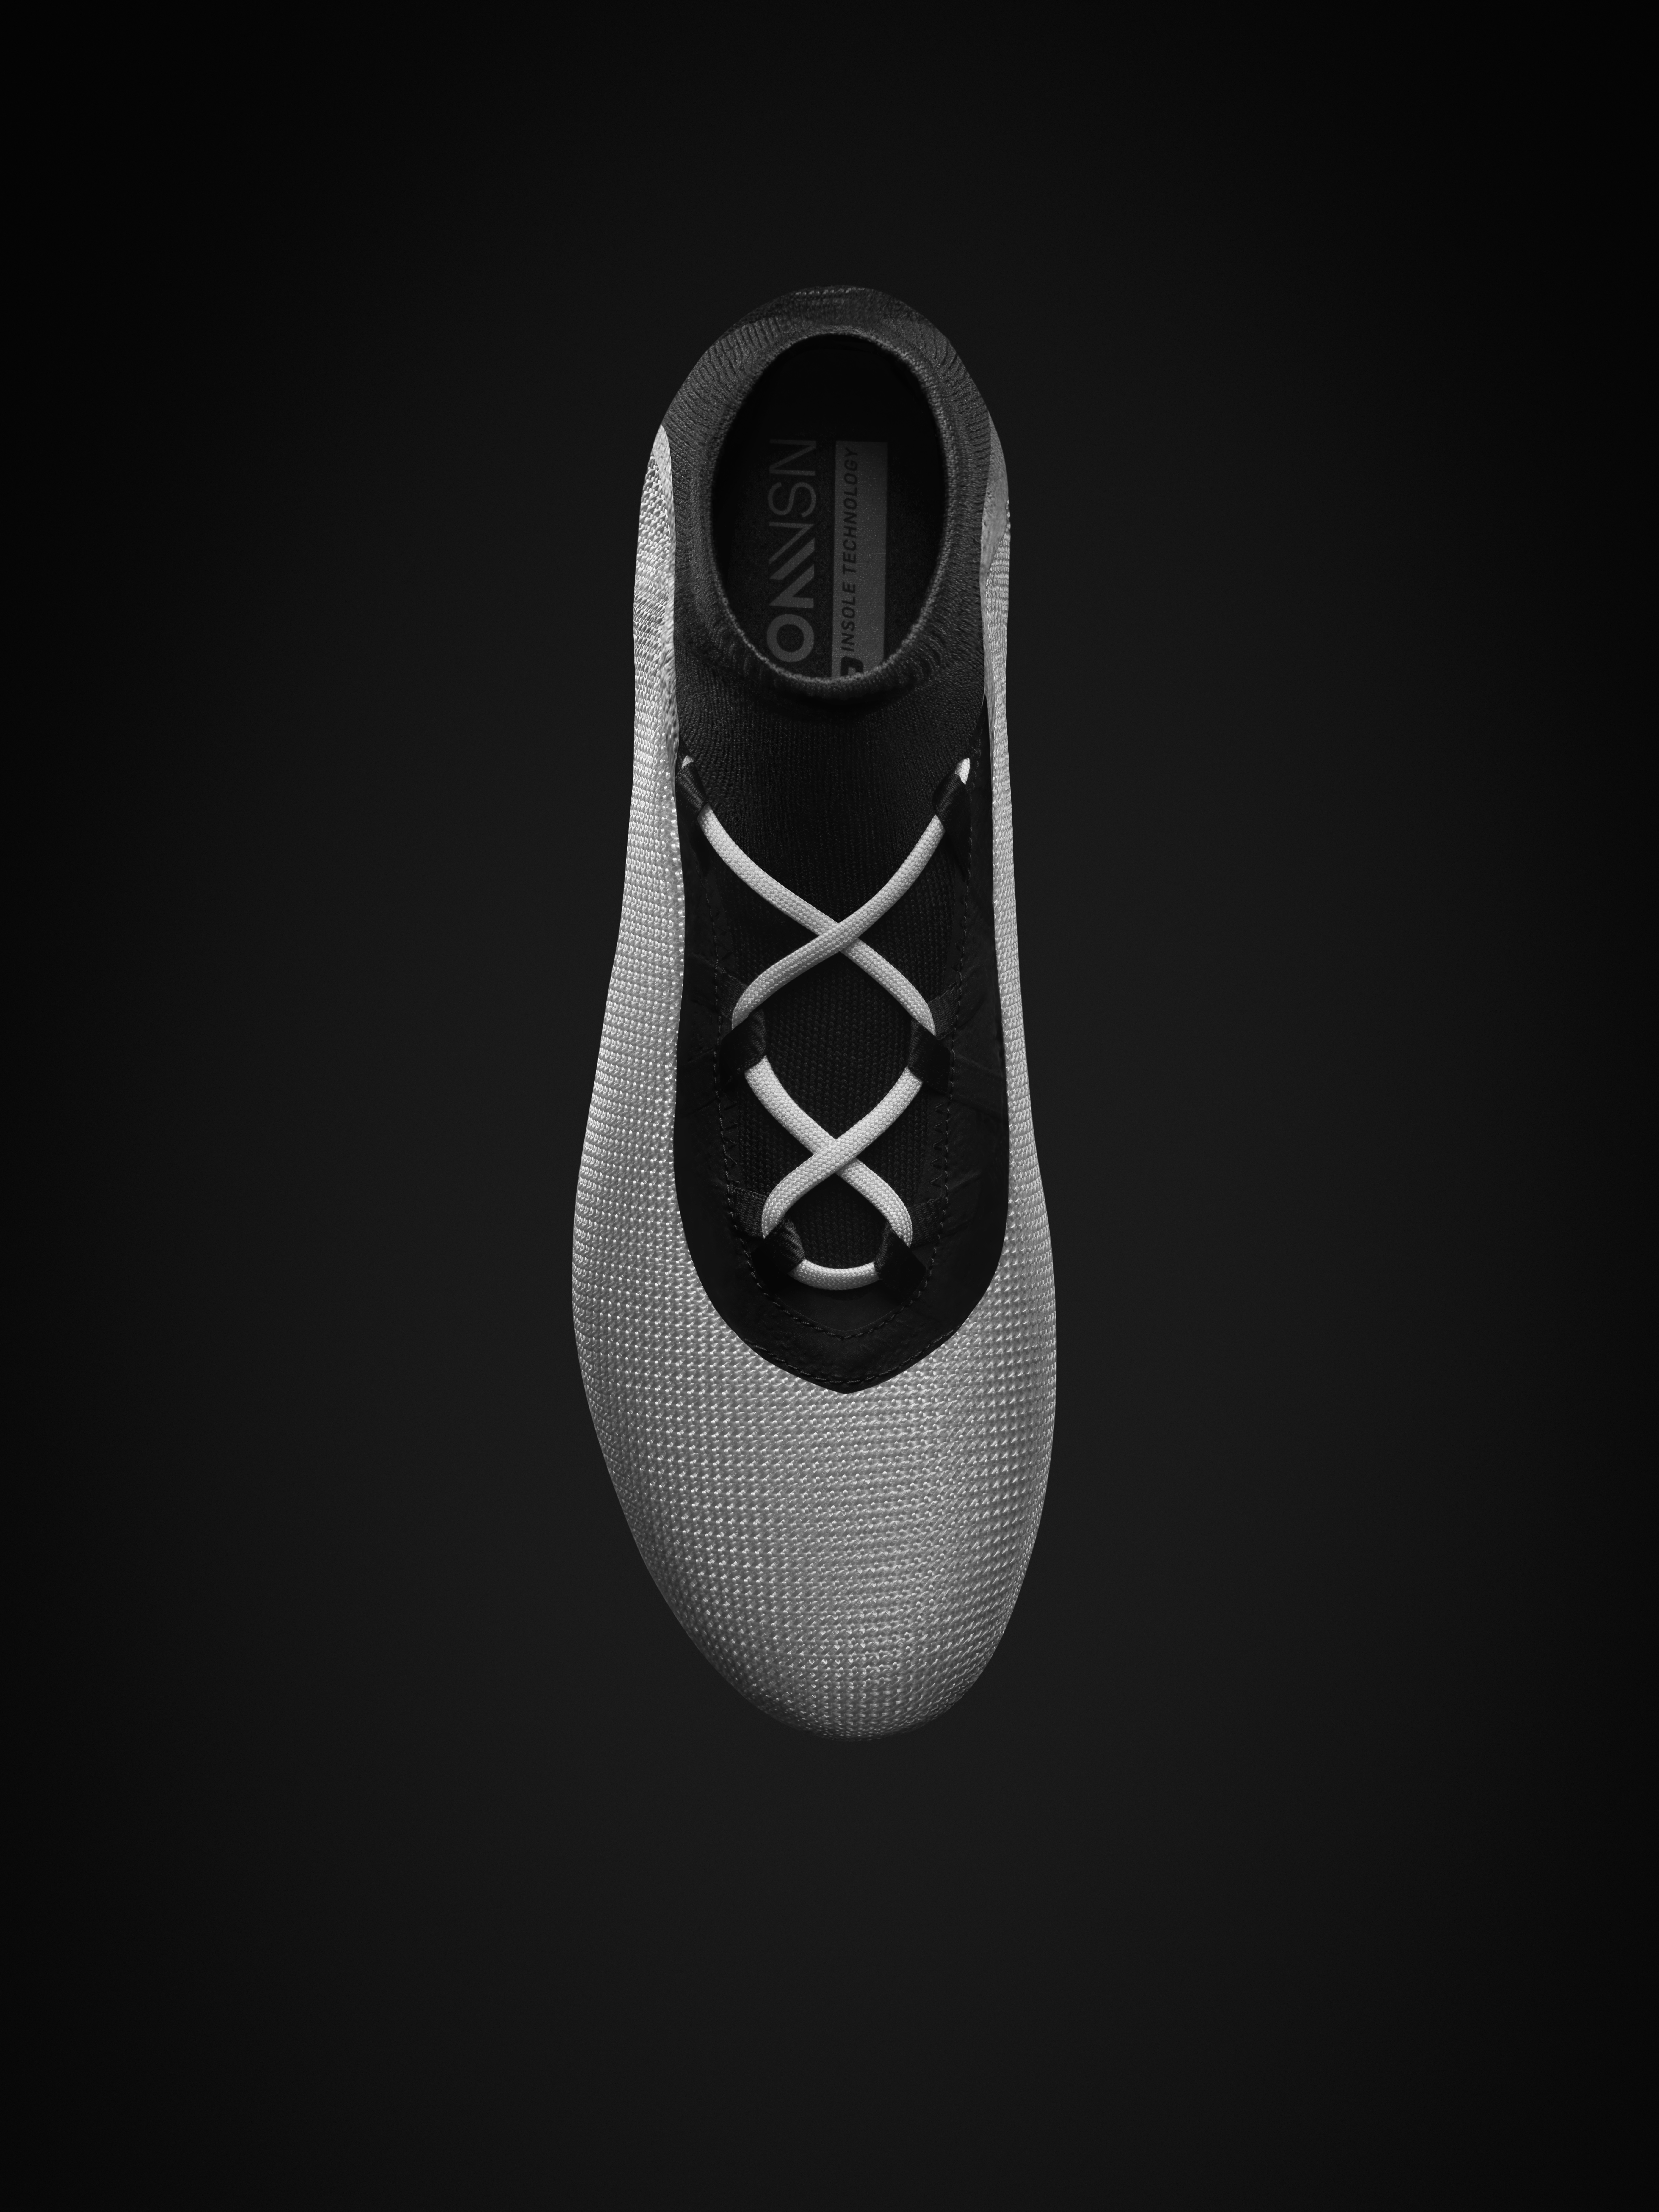 Nike'ın yeni krampon modeli PhantomVSN ile tanışın